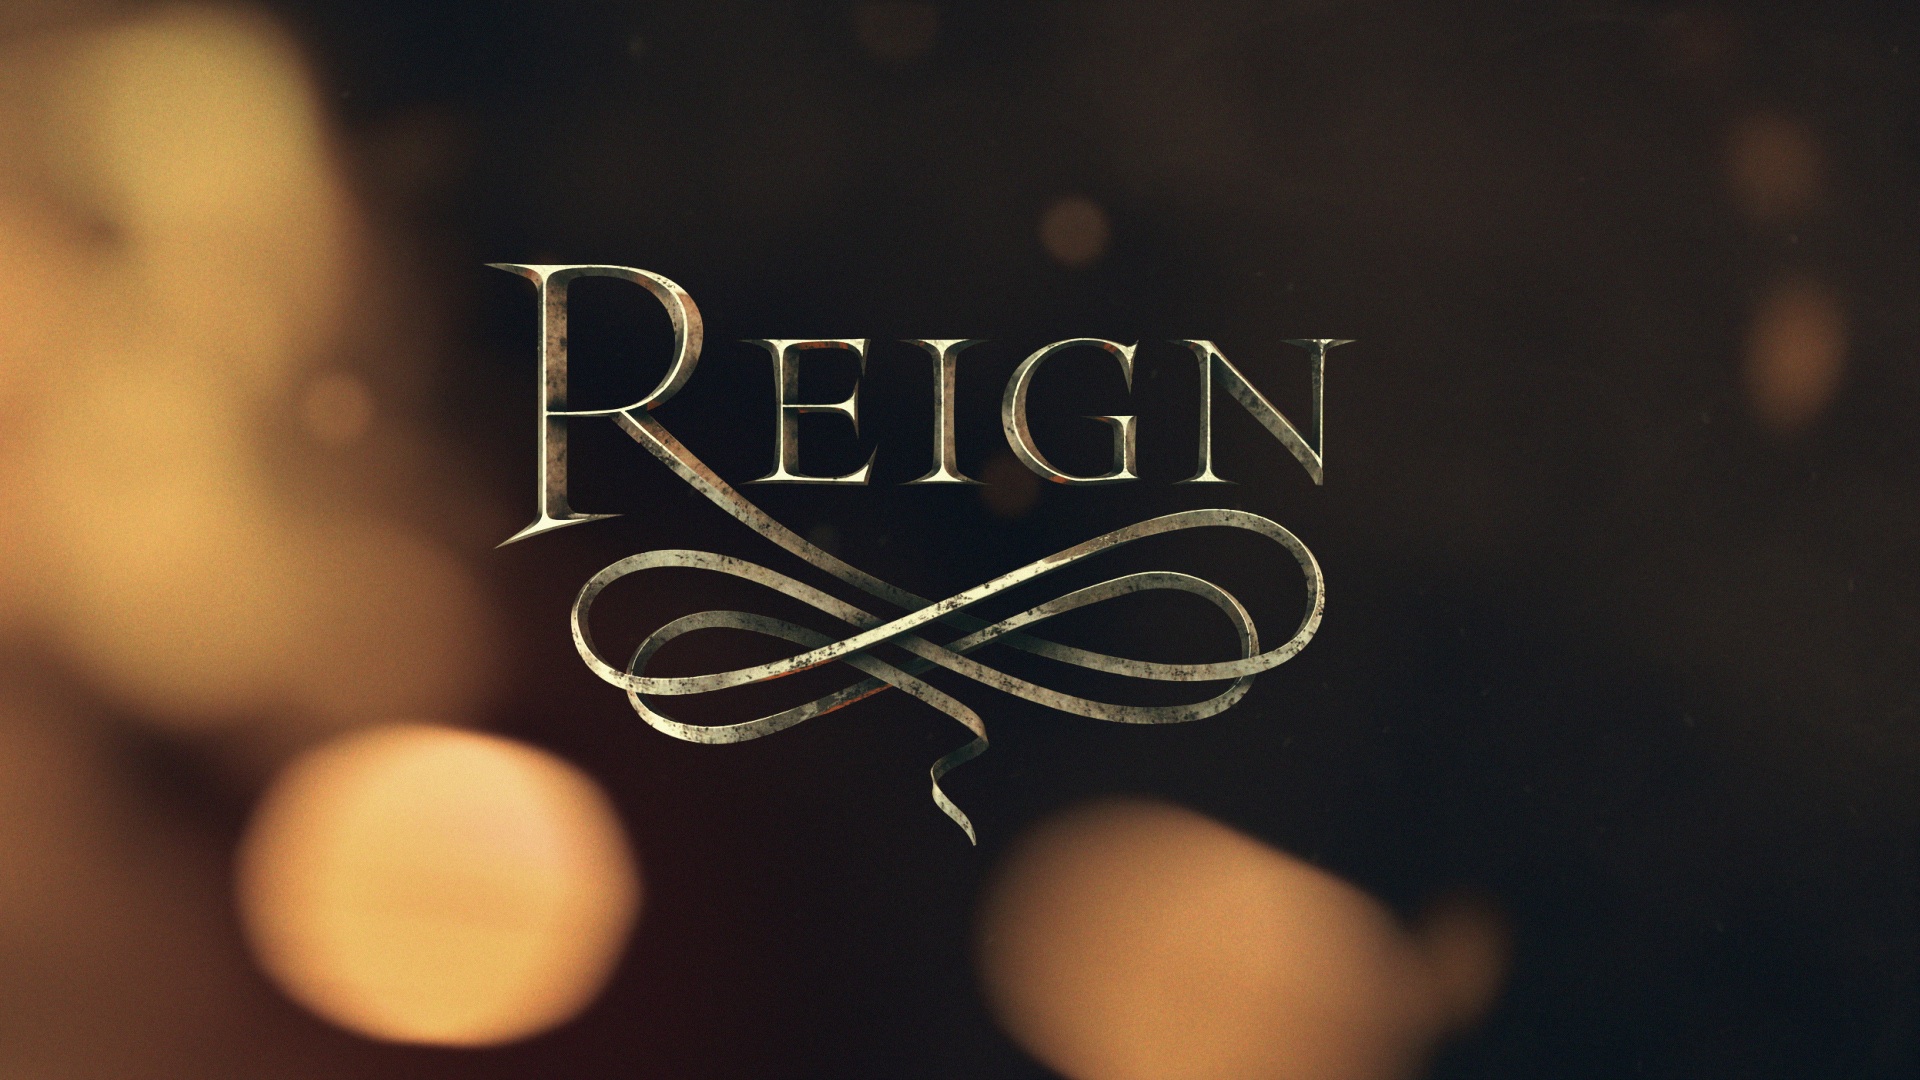 Image Reign Pr 11 Reign Cw Wiki Fandom Powered By Wikia